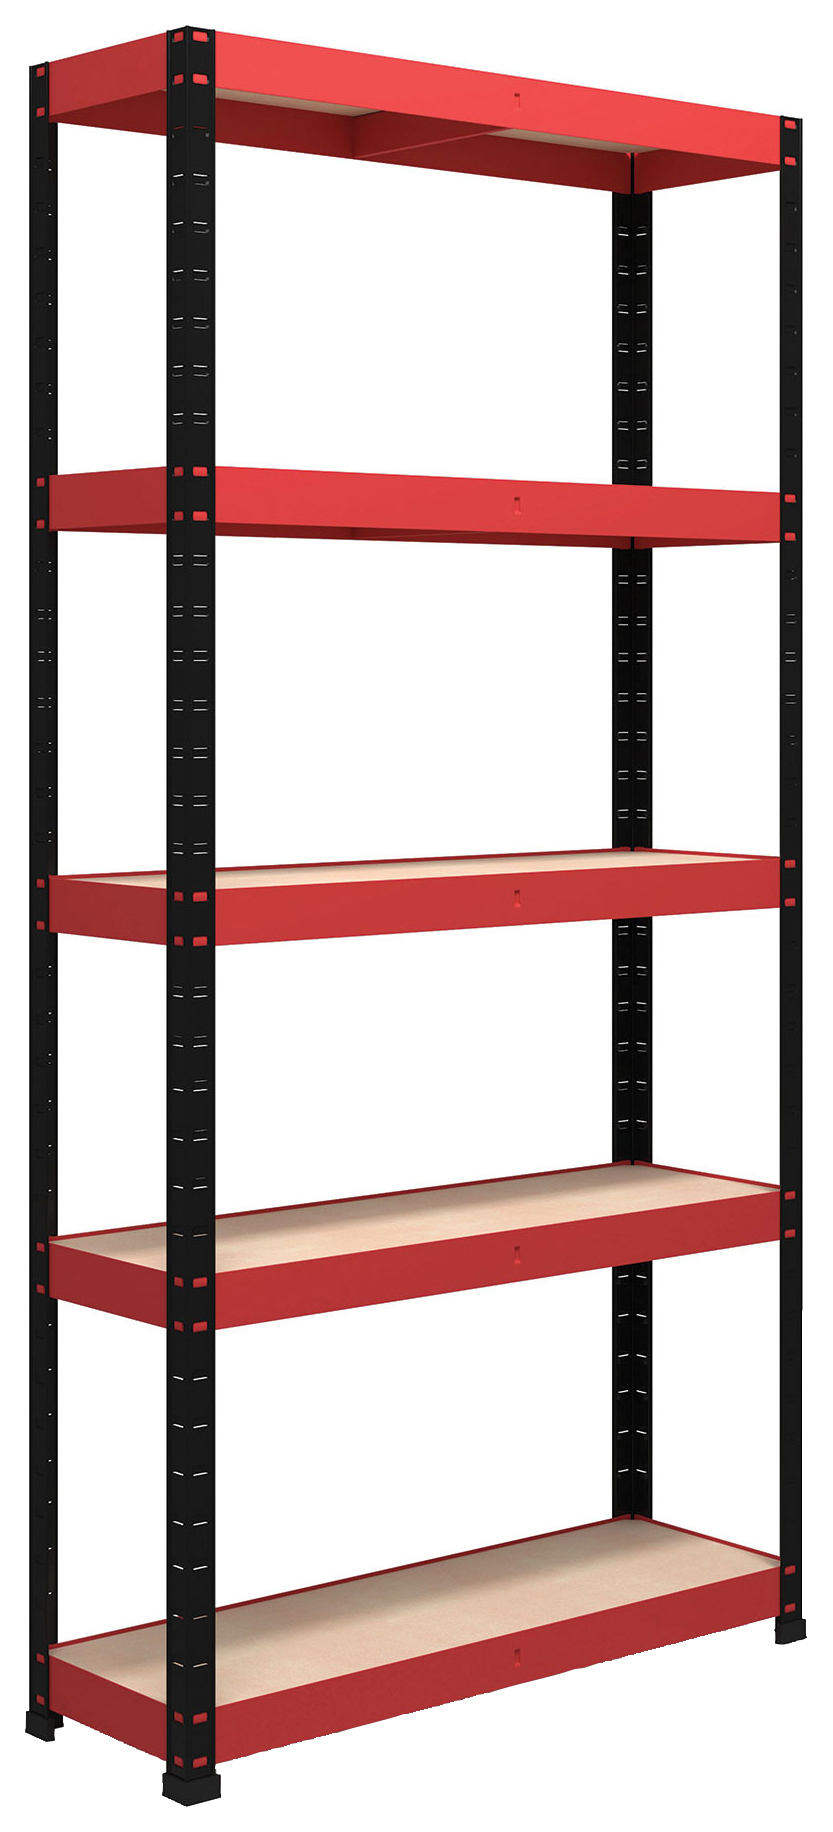 Image of Rb Boss Shelf Kit 5 Wood Shelves - 1800 x 900 x 400mm 250kg Udl